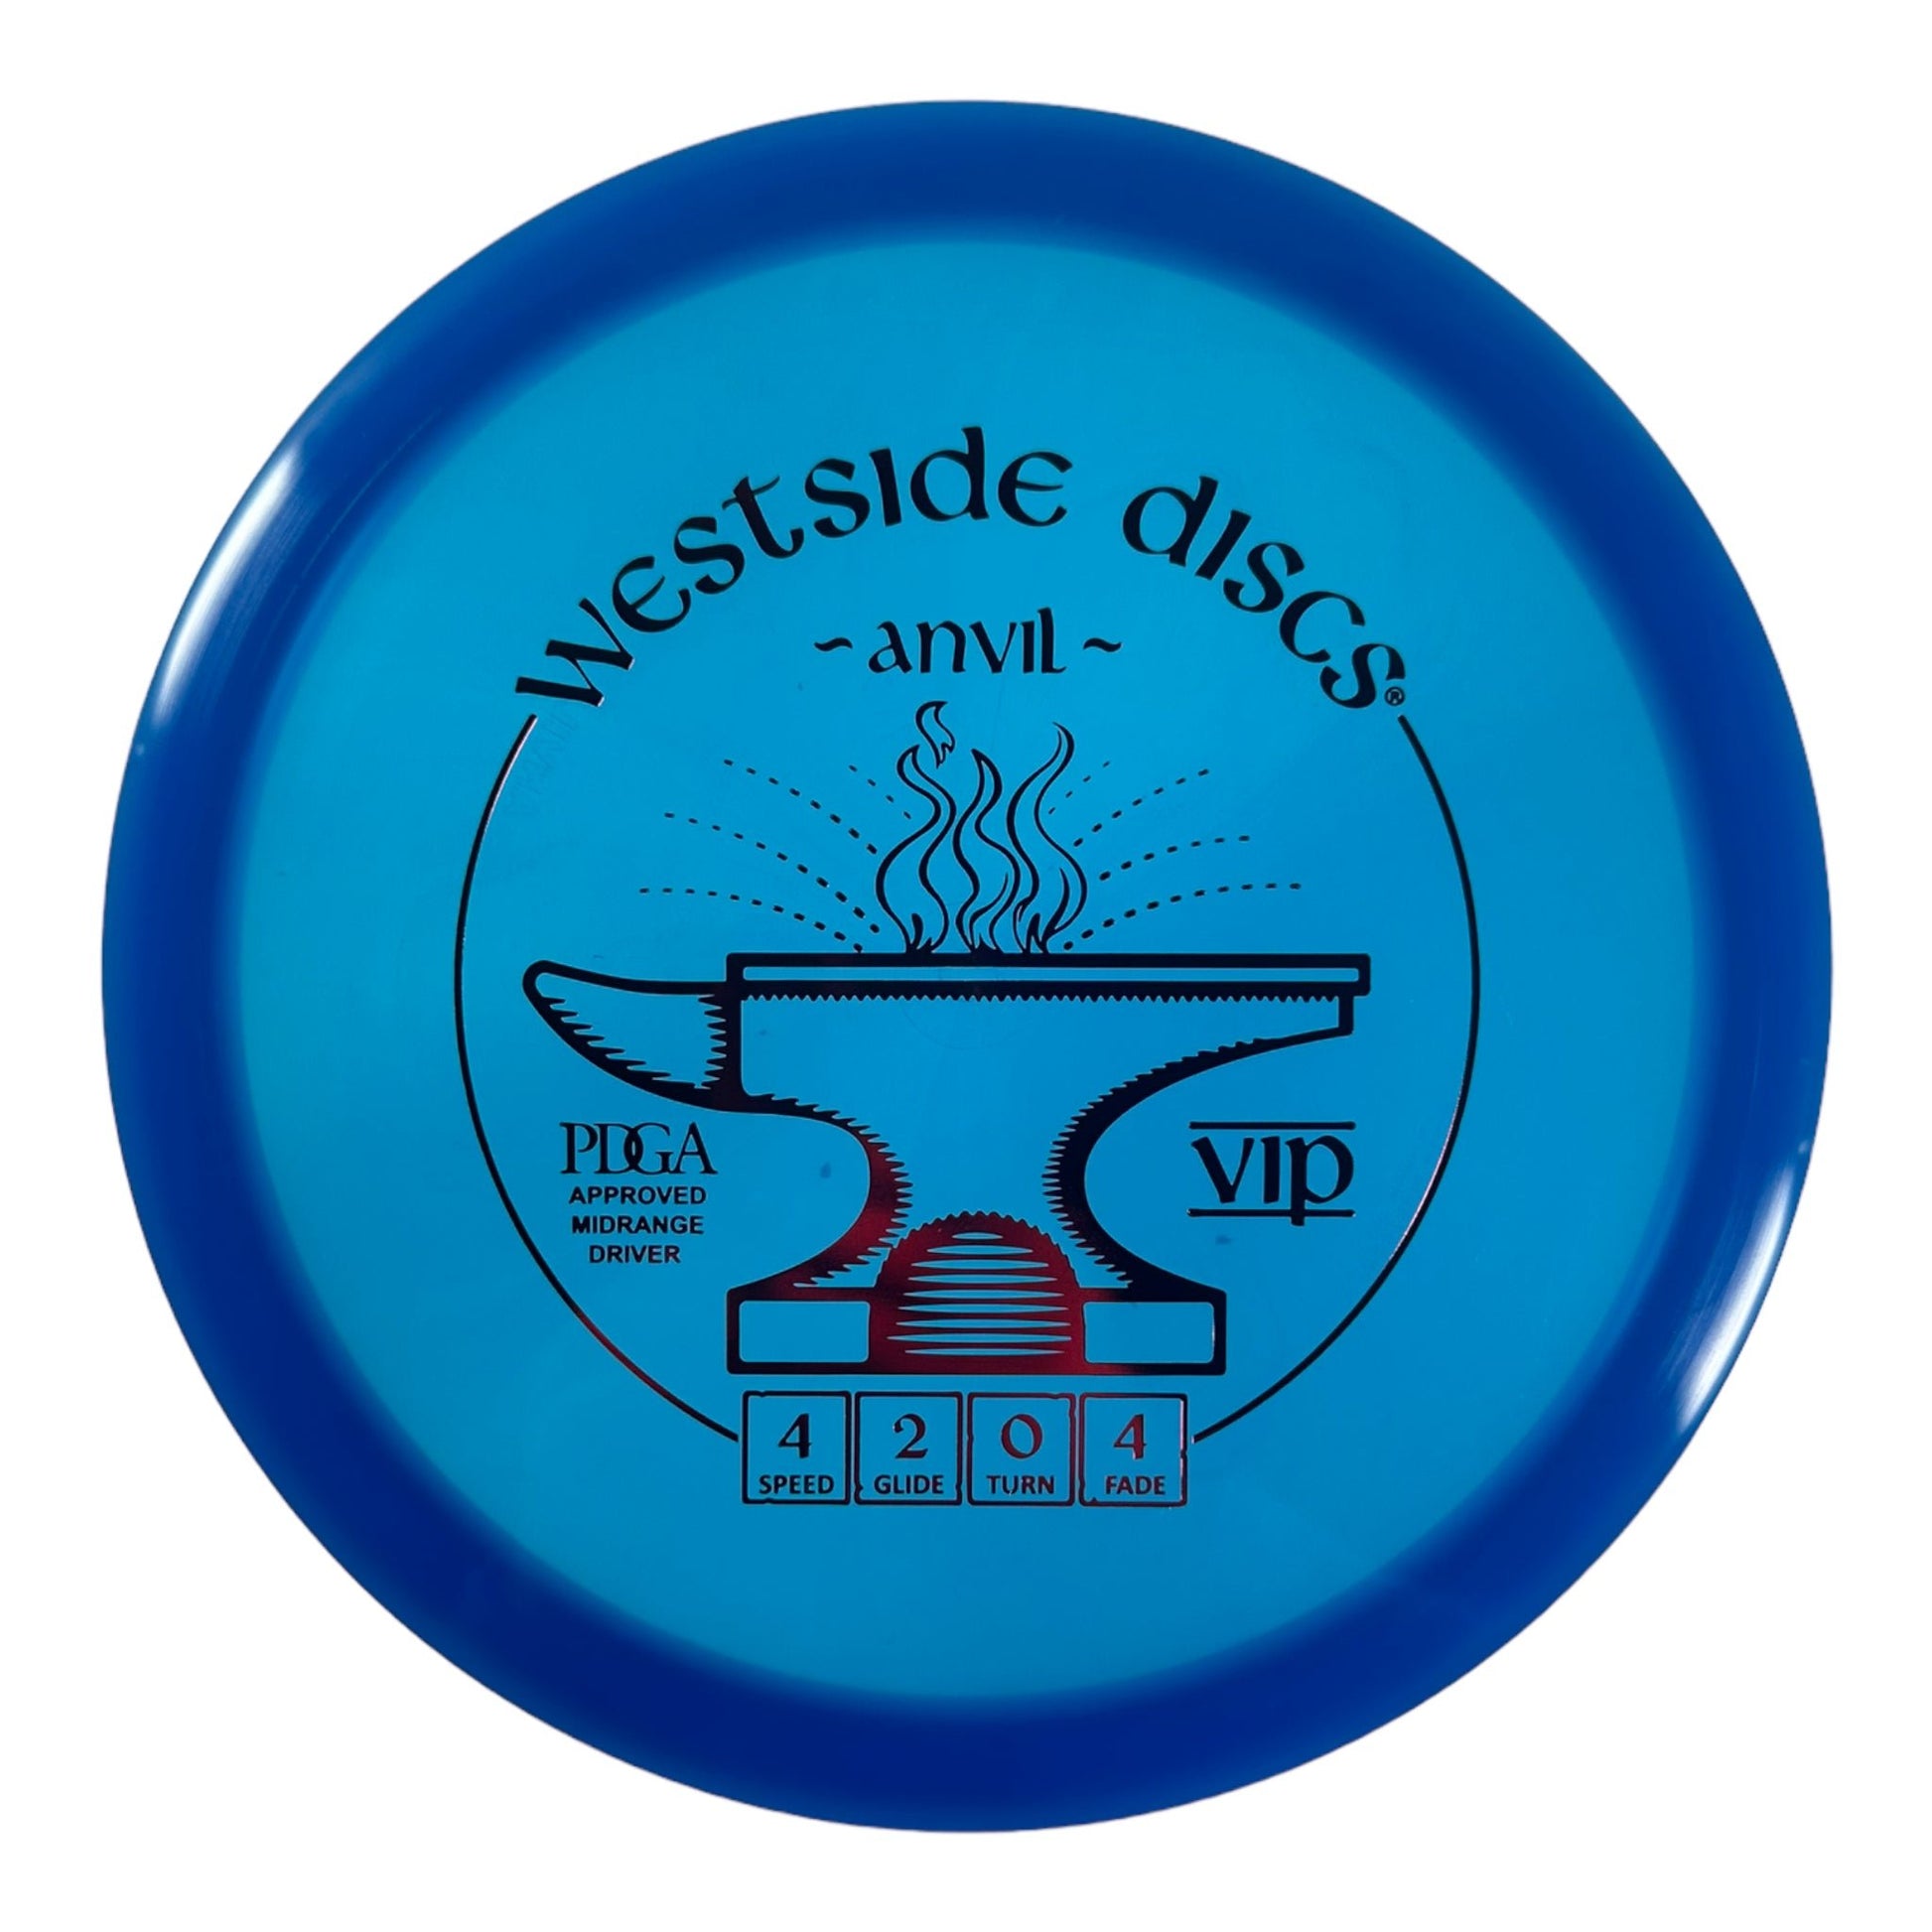 Westside Discs Anvil | VIP | Blue/Red 174g Disc Golf